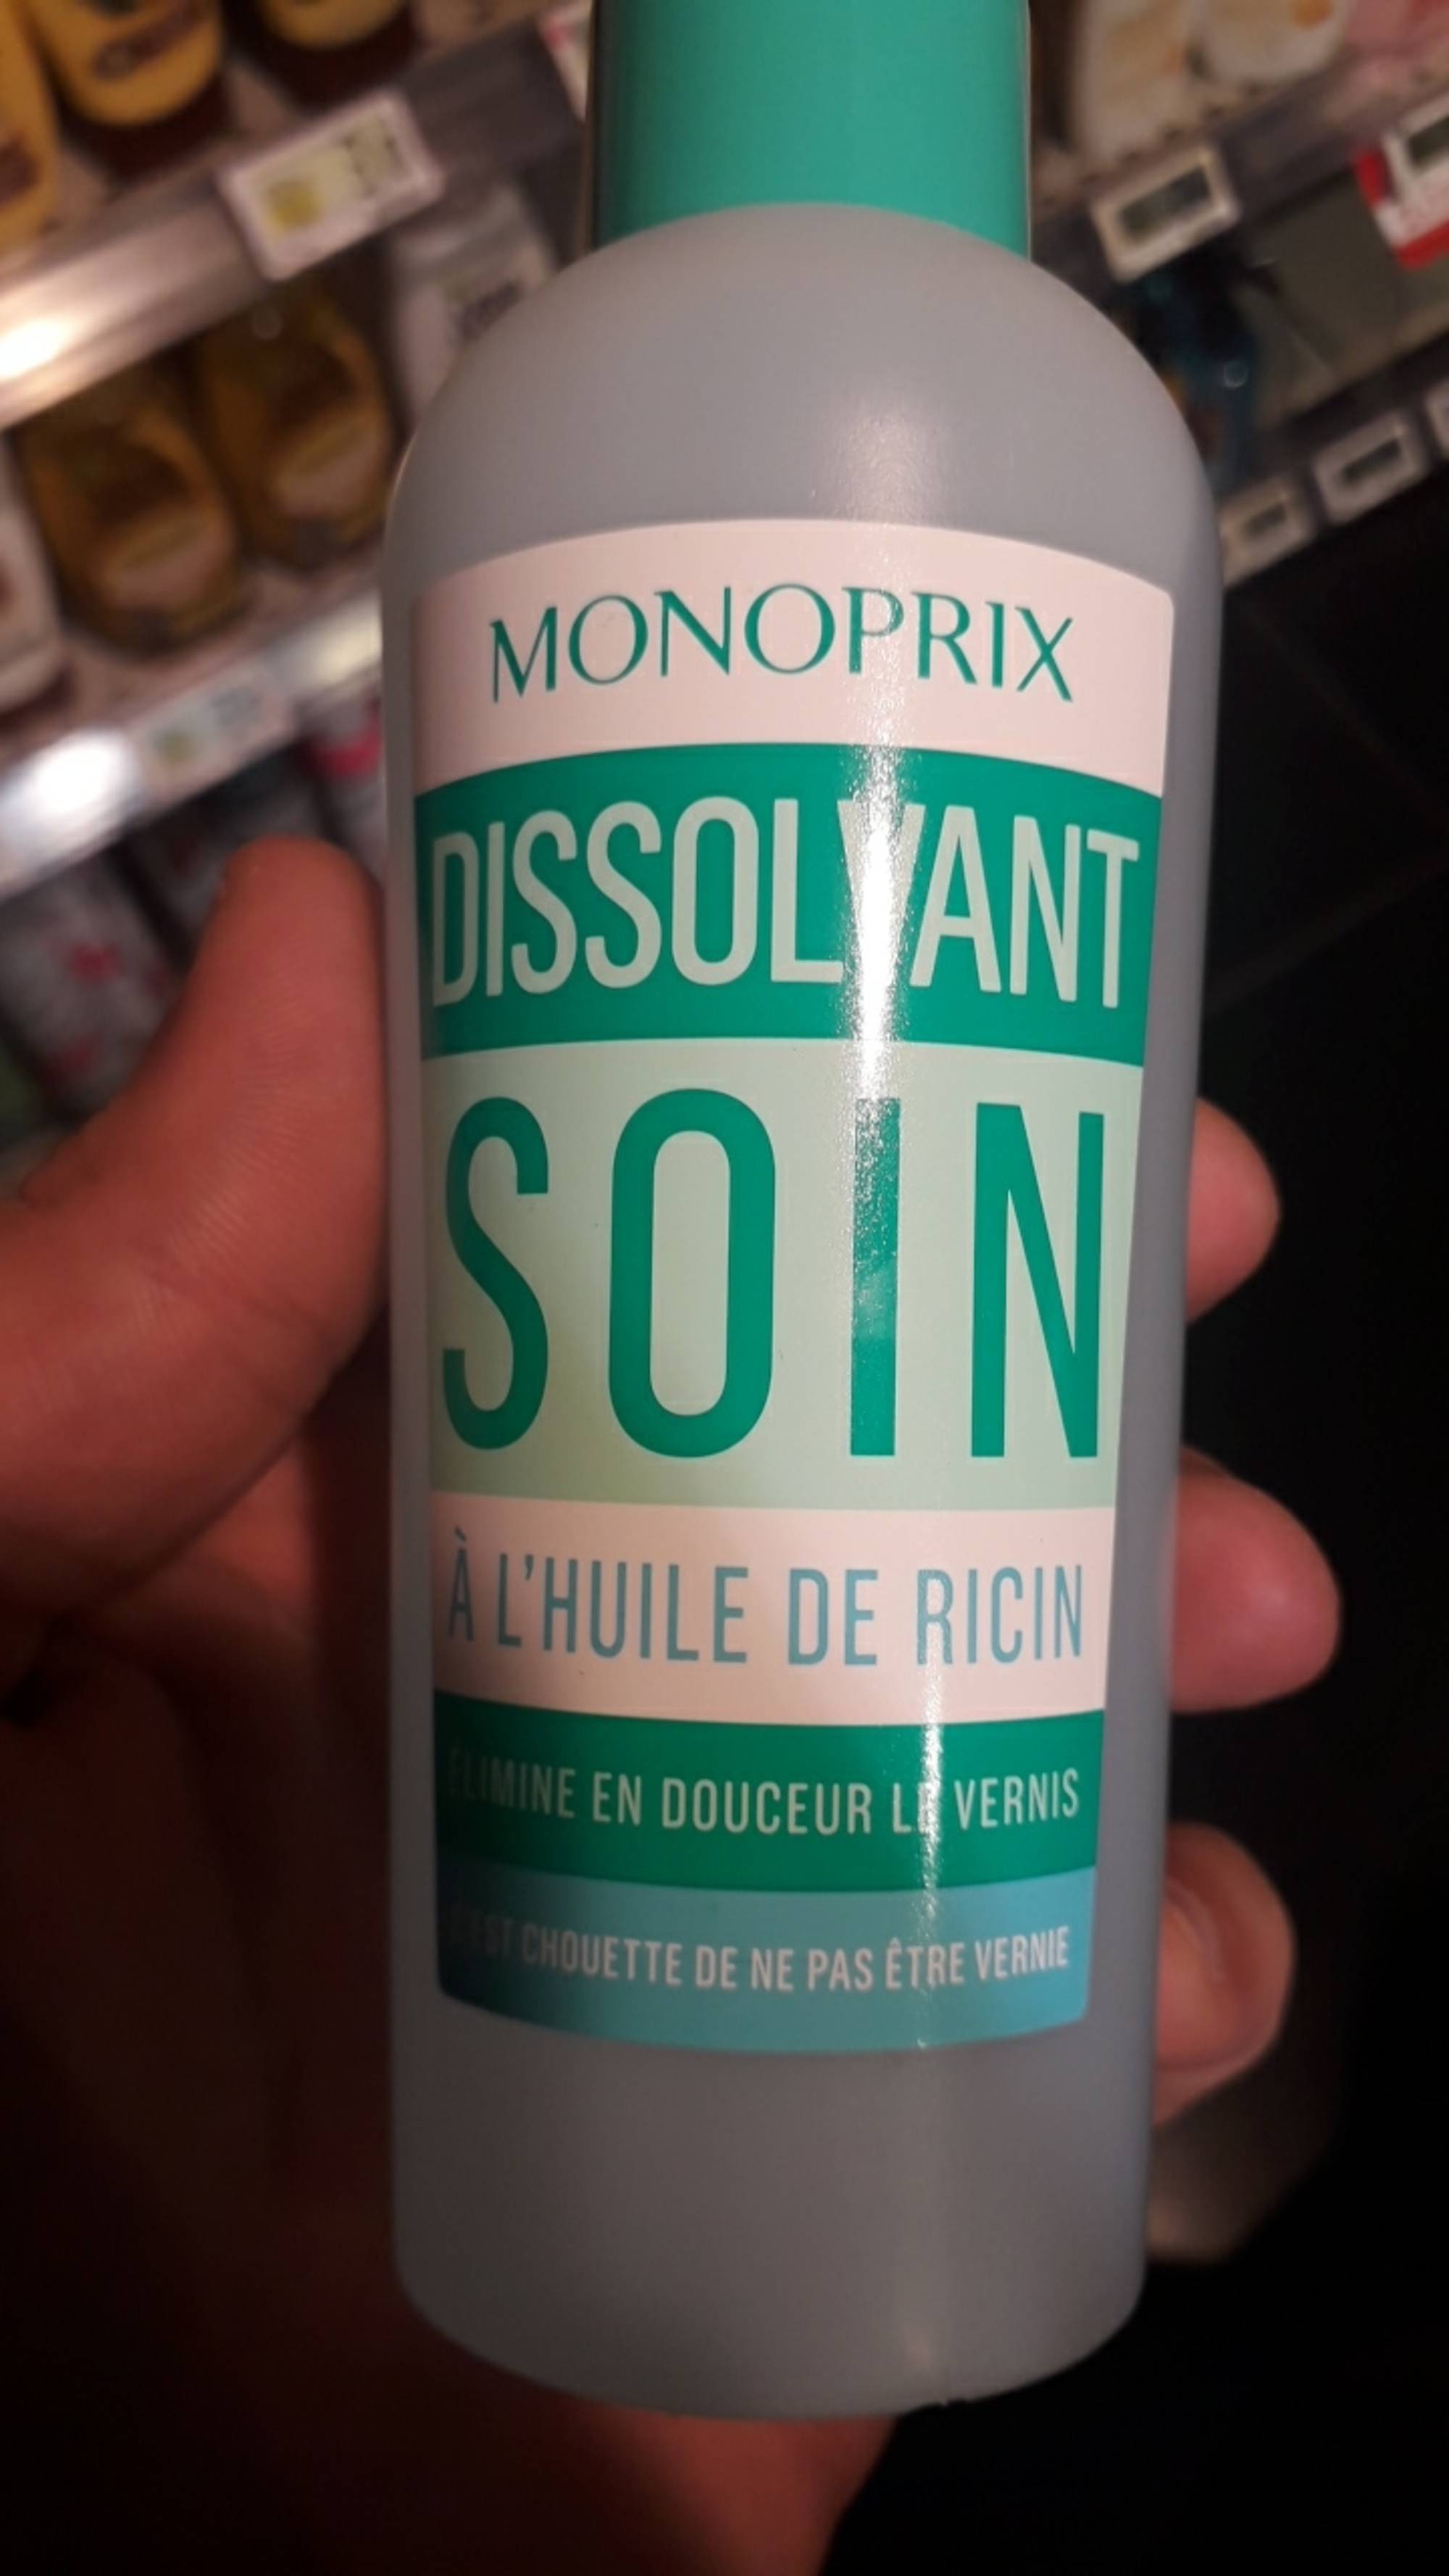 MONOPRIX - Soin à l'huile de ricin - Dissolvant